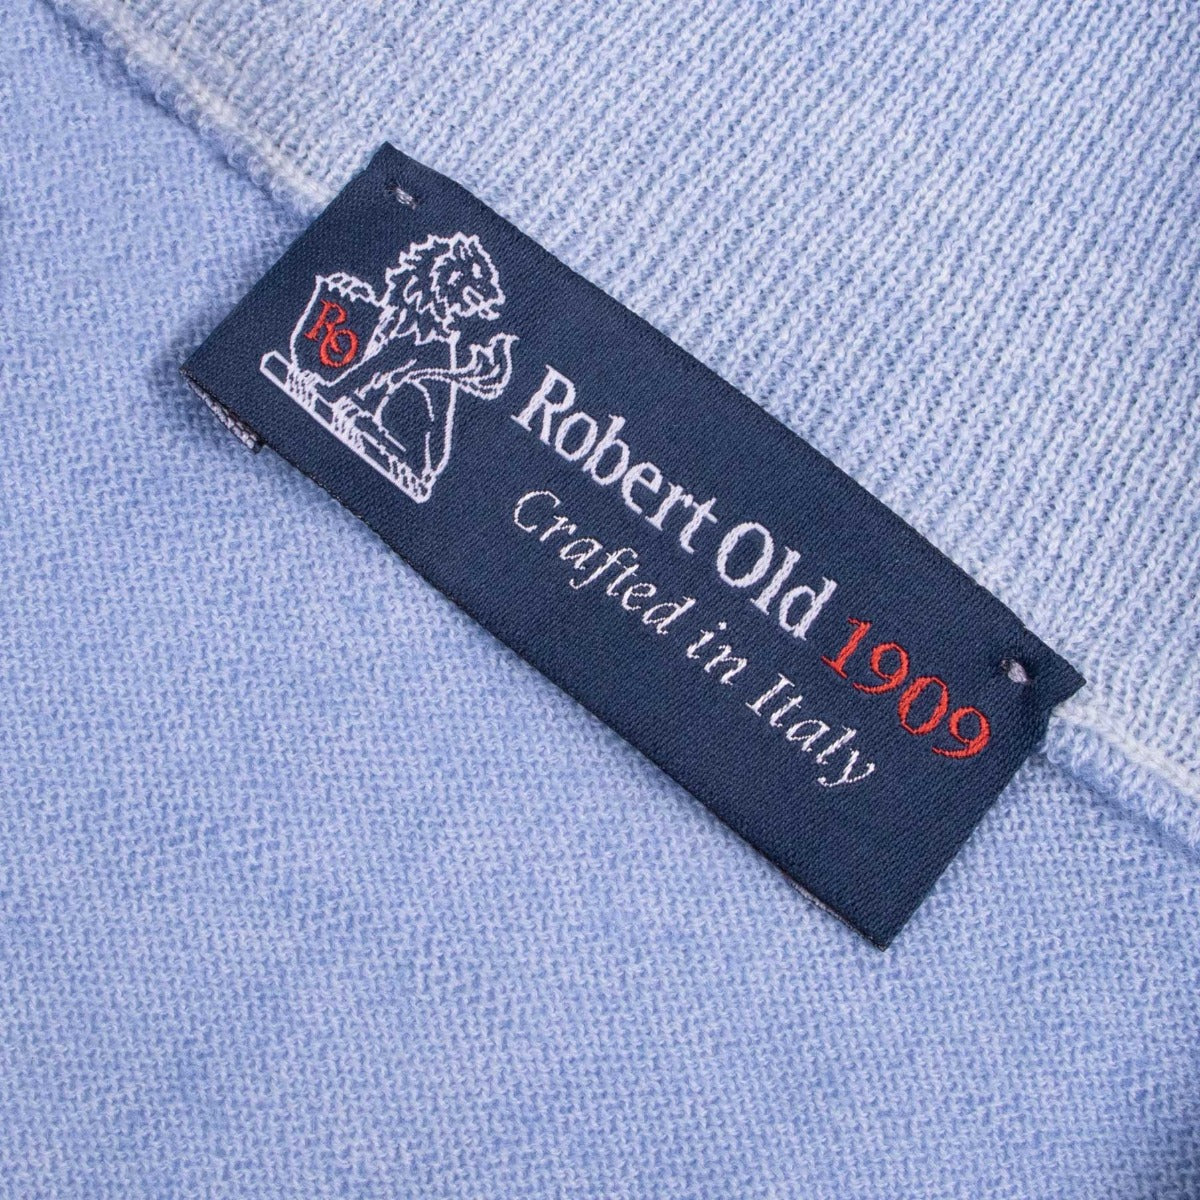 Light Blue 100% Virgin Wool Long Sleeve Zip Neck Knit  Robert Old   